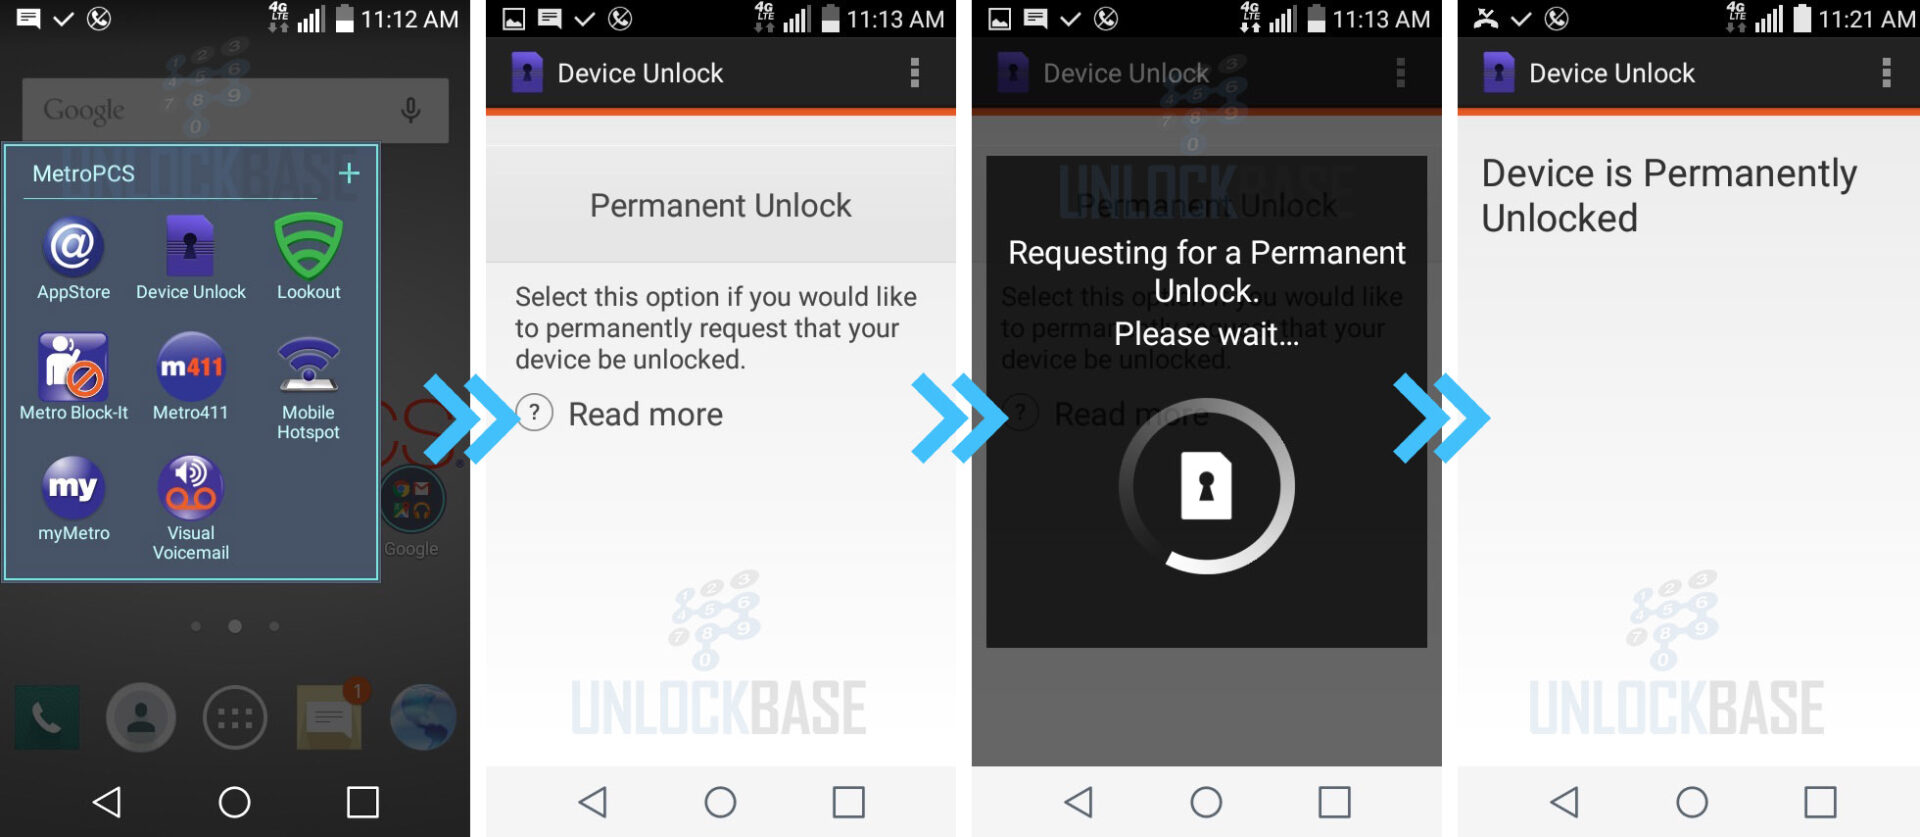 metropcs device unlock app unlock process